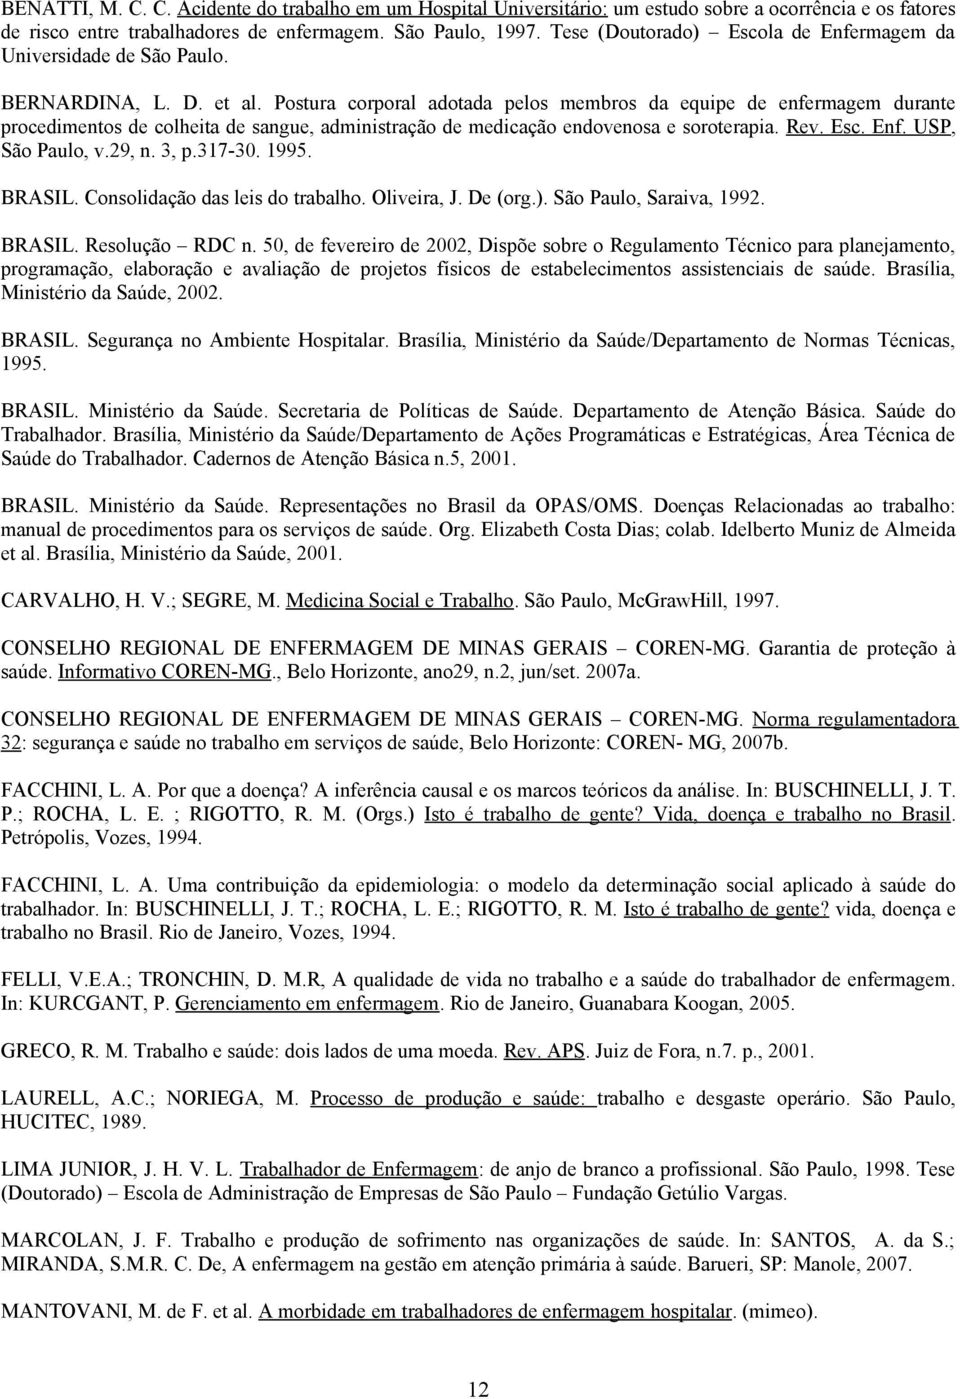 Postur corporl dotd pelos membros d equipe de enfermgem durnte procedimentos de colheit de sngue, dministrção de medicção endovenos e soroterpi. Rev. Esc. Enf. USP, São Pulo, v.29, n. 3, p.317-30.